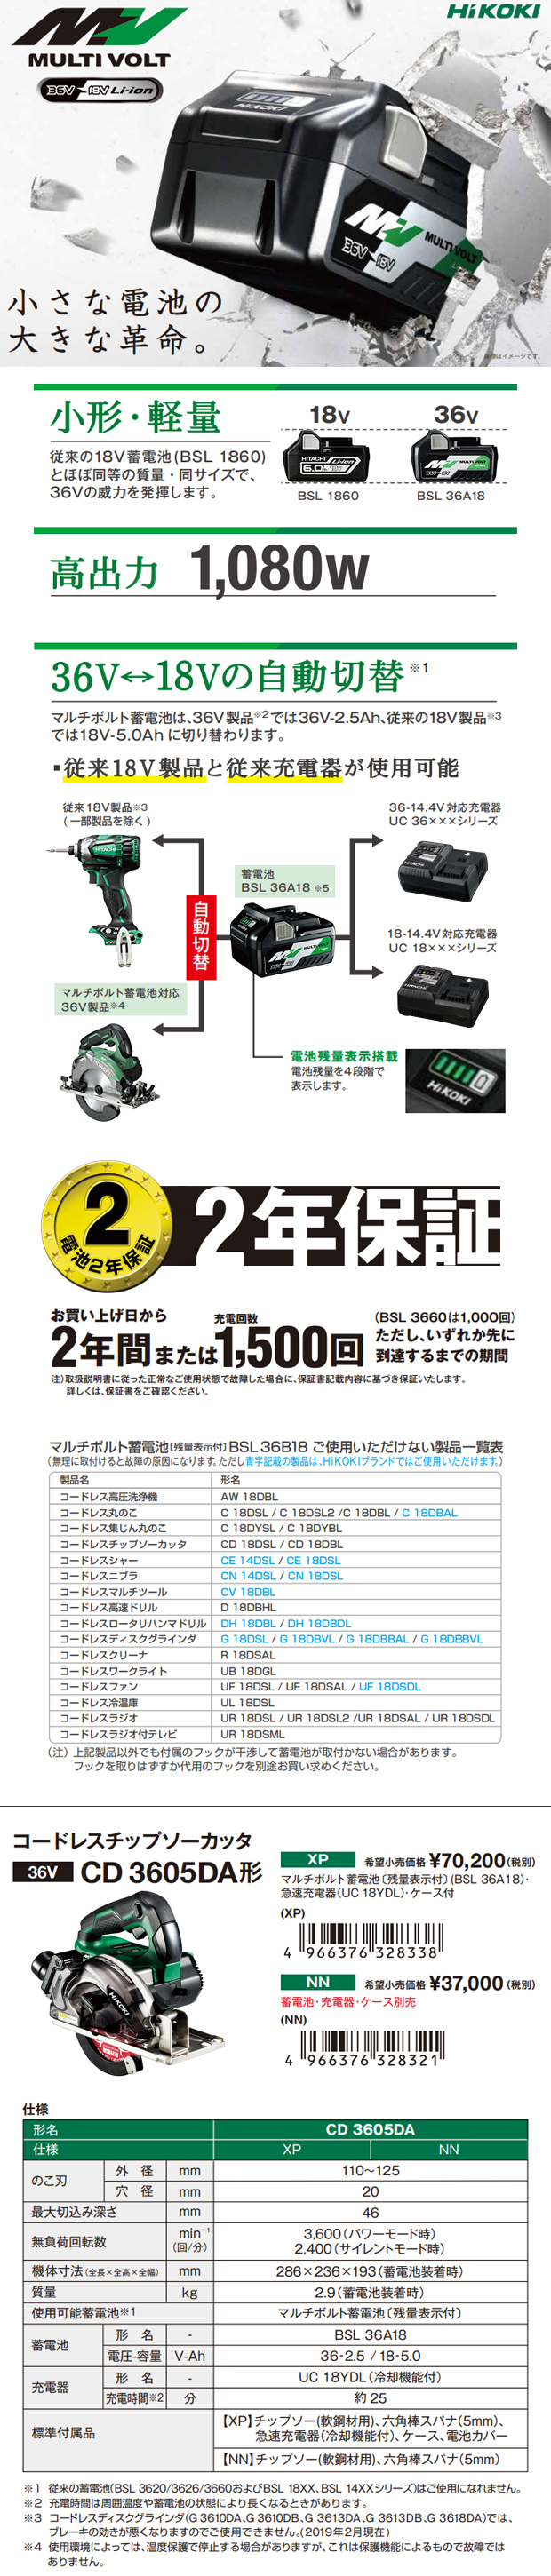 HiKOKI(ハイコーキ) (ハイコーキ) コードレスチップソーカッター マルチボルトシリーズ CD3605DA(XP) - 1